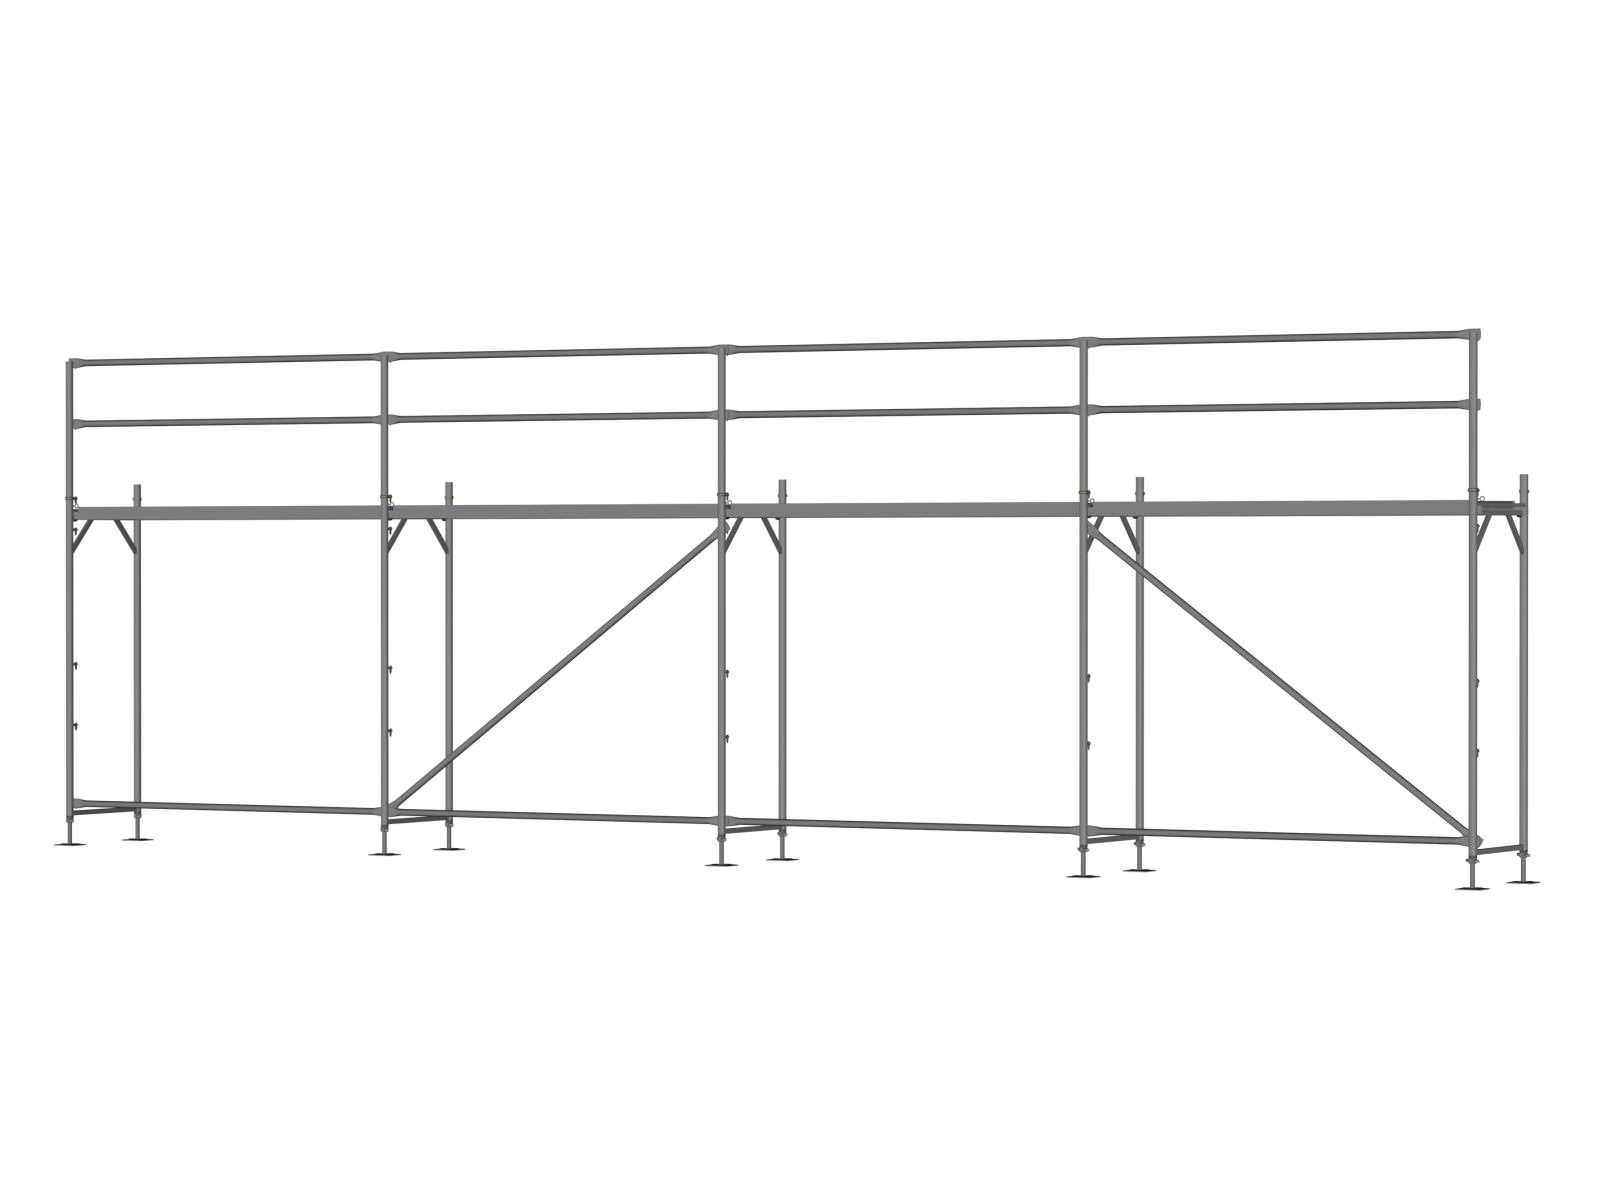 Alu Traufseitengerüst 40 qm - 2,5 m Felder - 10 m lang - 4 m Arbeitshöhe